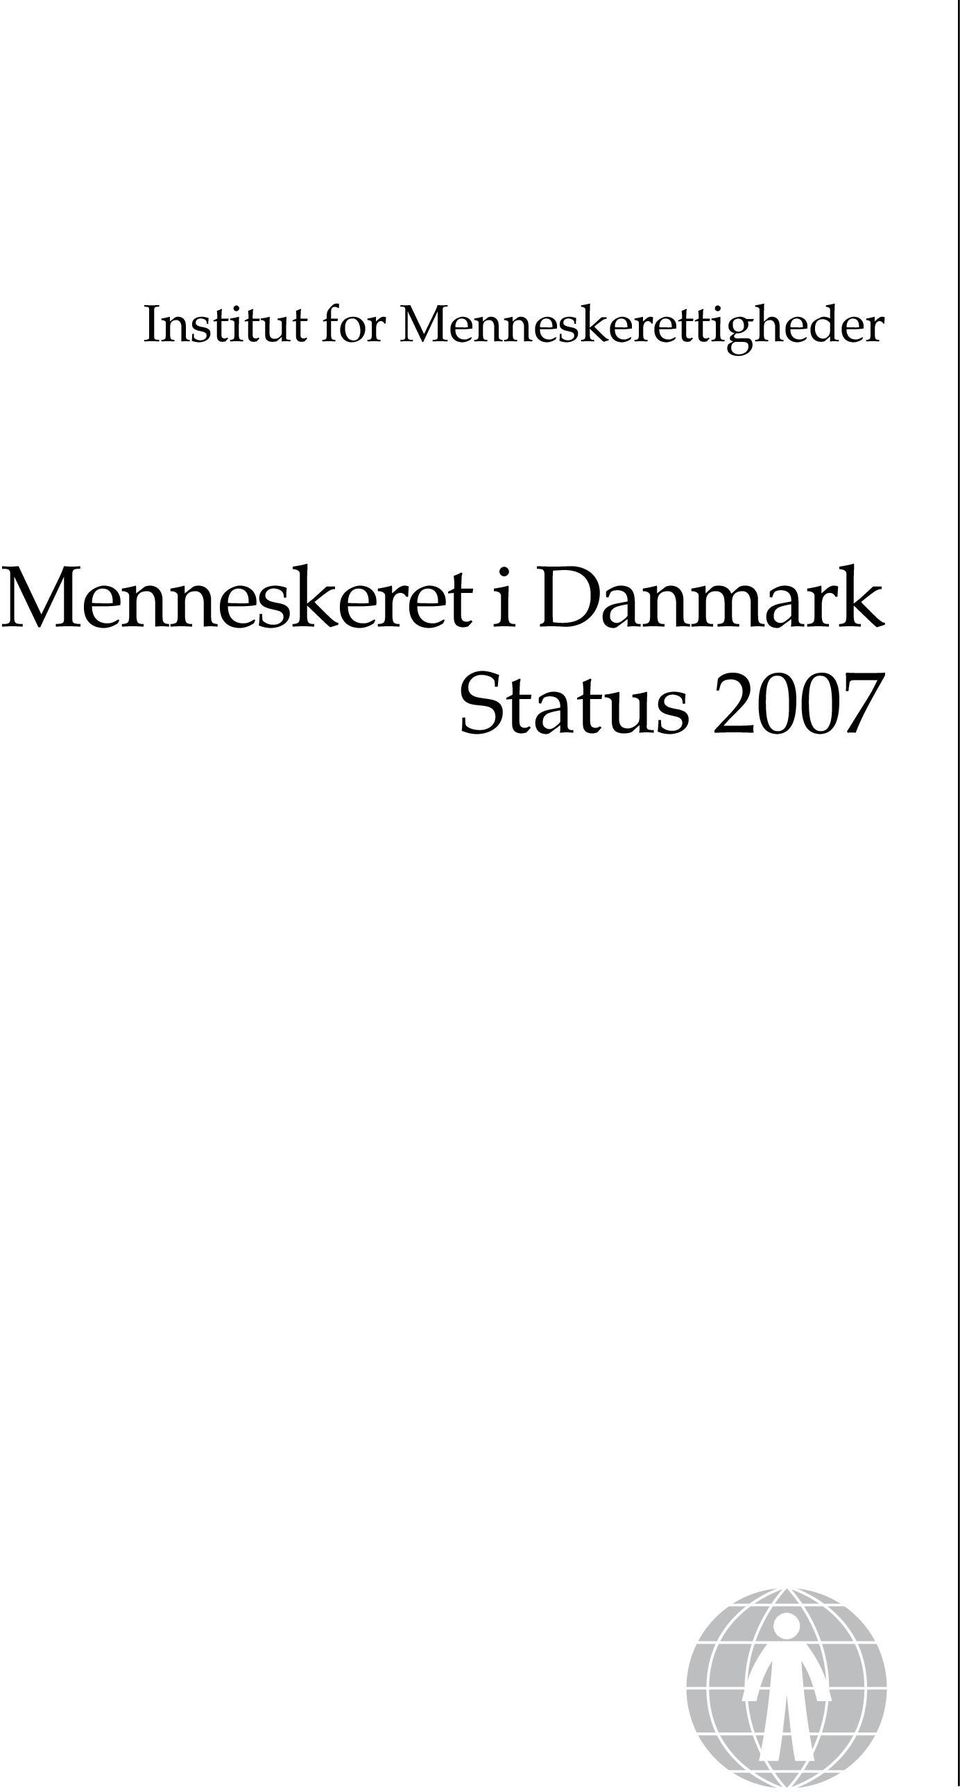 Menneskeret i Danmark